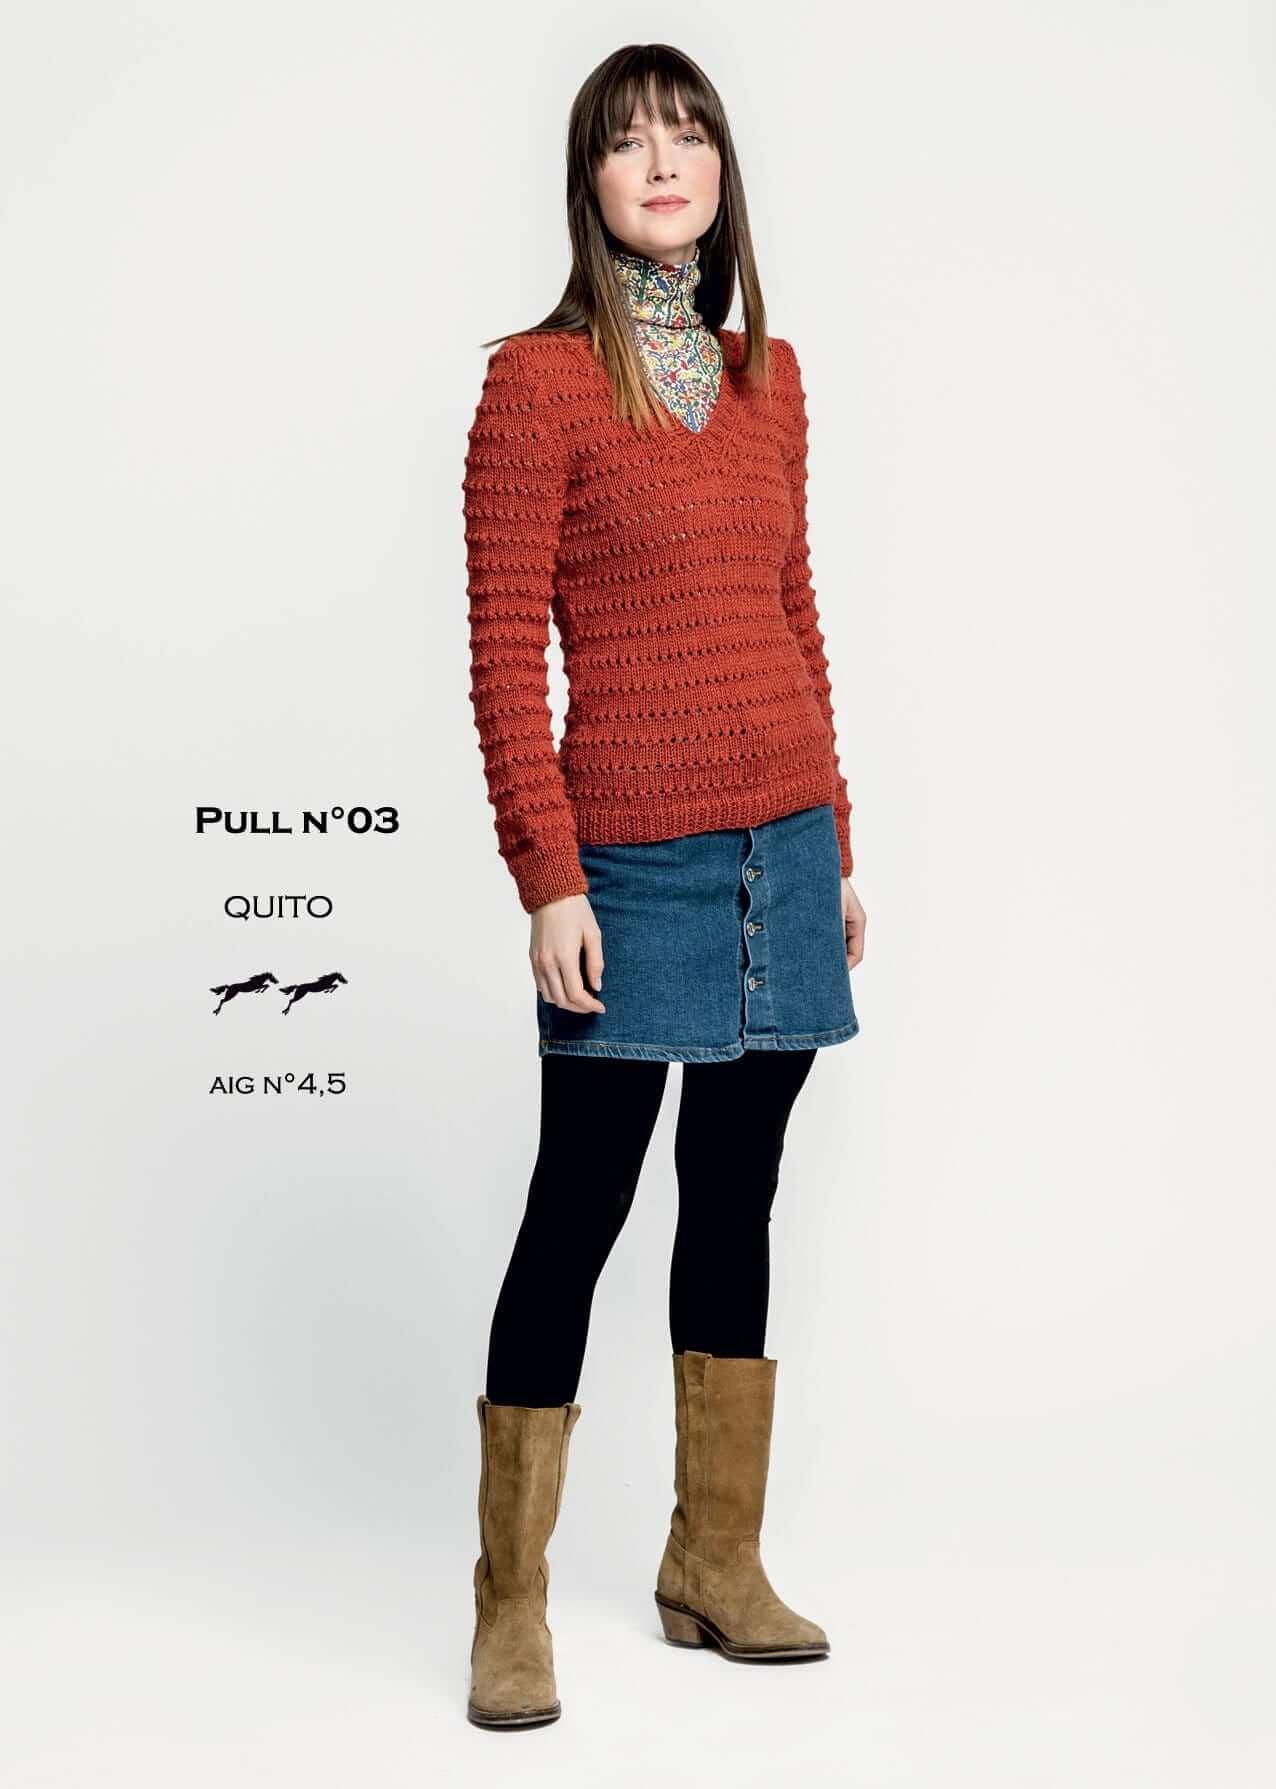 achat en ligne modèles tricot pulls pour femmes - Laines Cheval Blanc